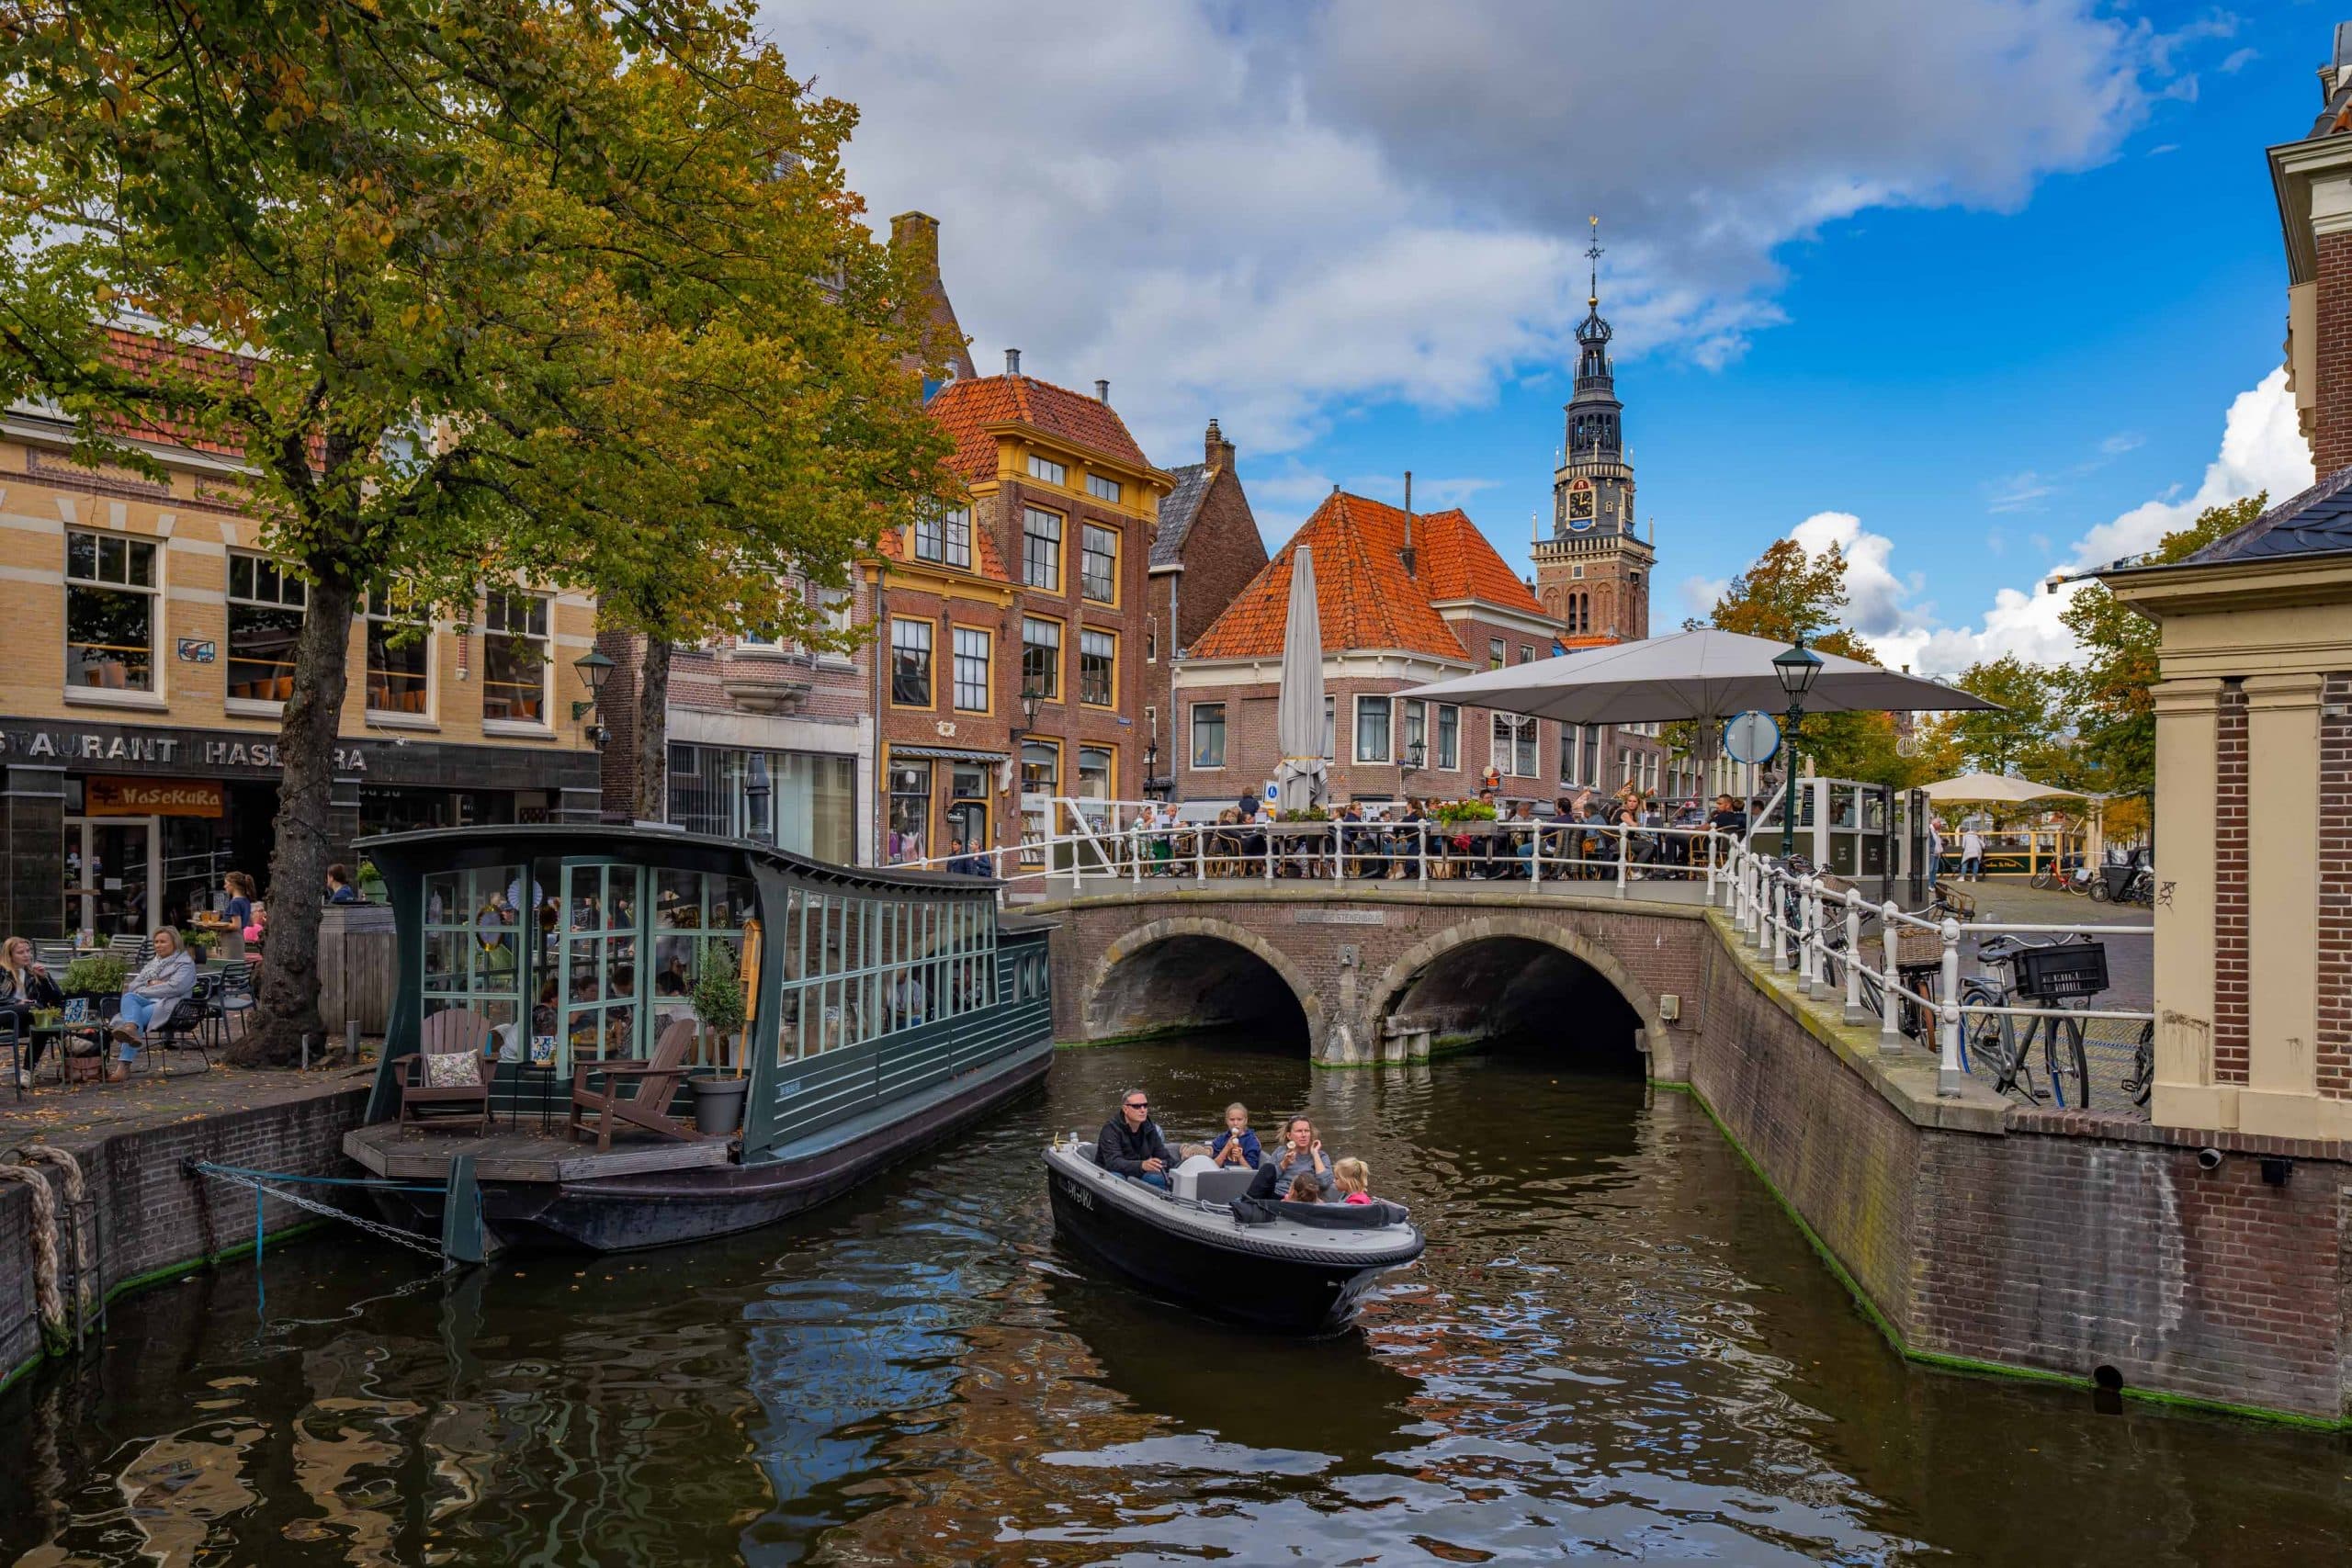 Sfeerfoto uit de binnenstad van Alkmaar